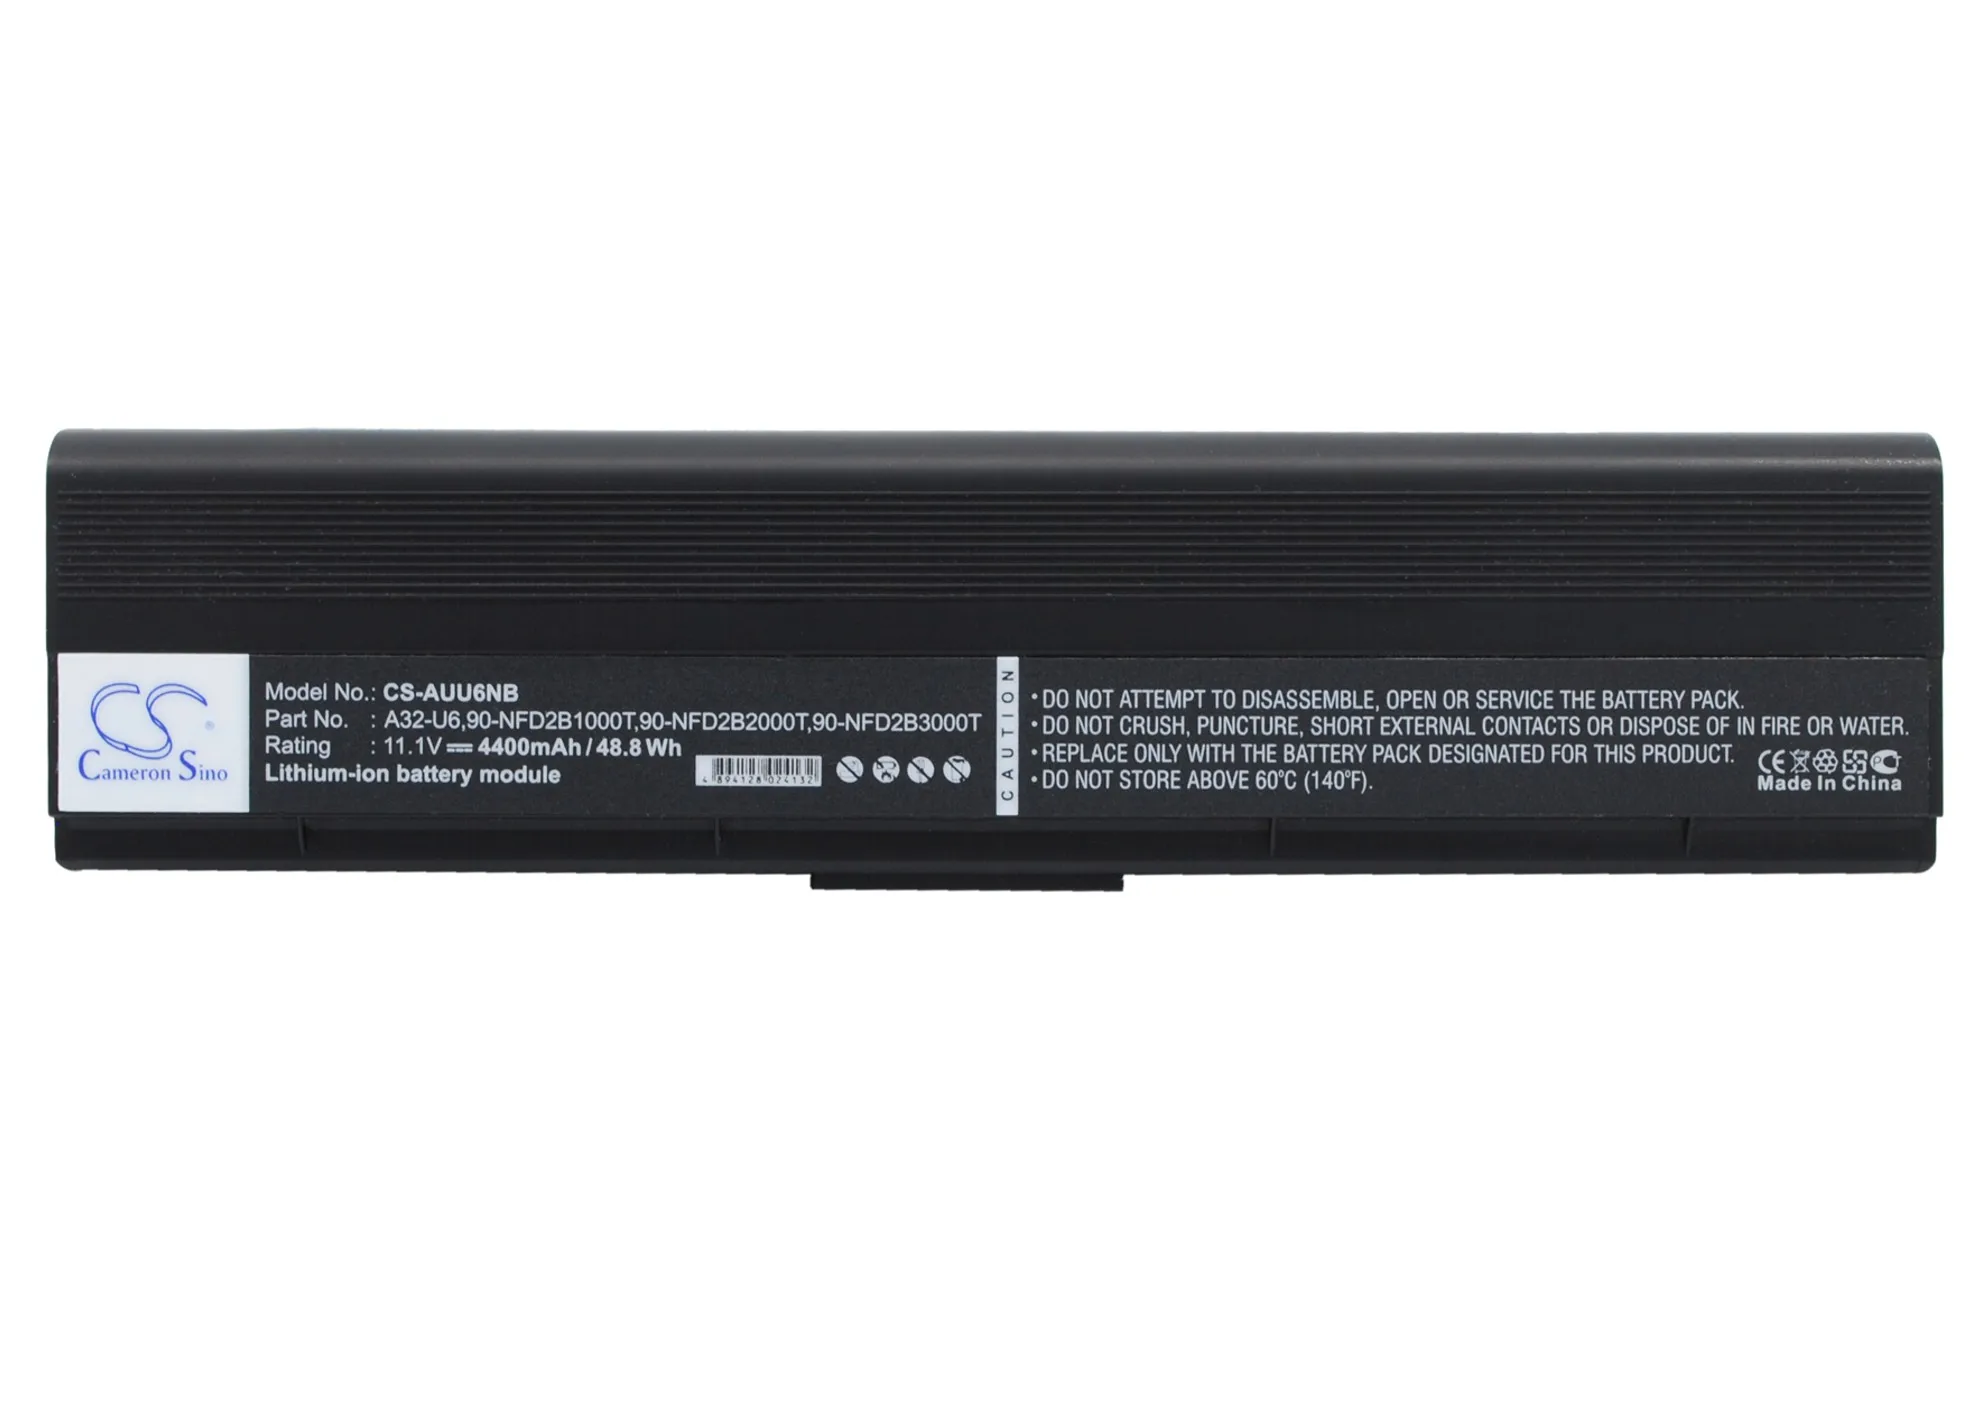 CS 4400 mah baterija za Asus U6S-X1 U6V, U6Vc 90-ND81B1000T, 90-ND81B2000T, 90-ND81B3000T, 90-NFD2B2000T, A32-U6